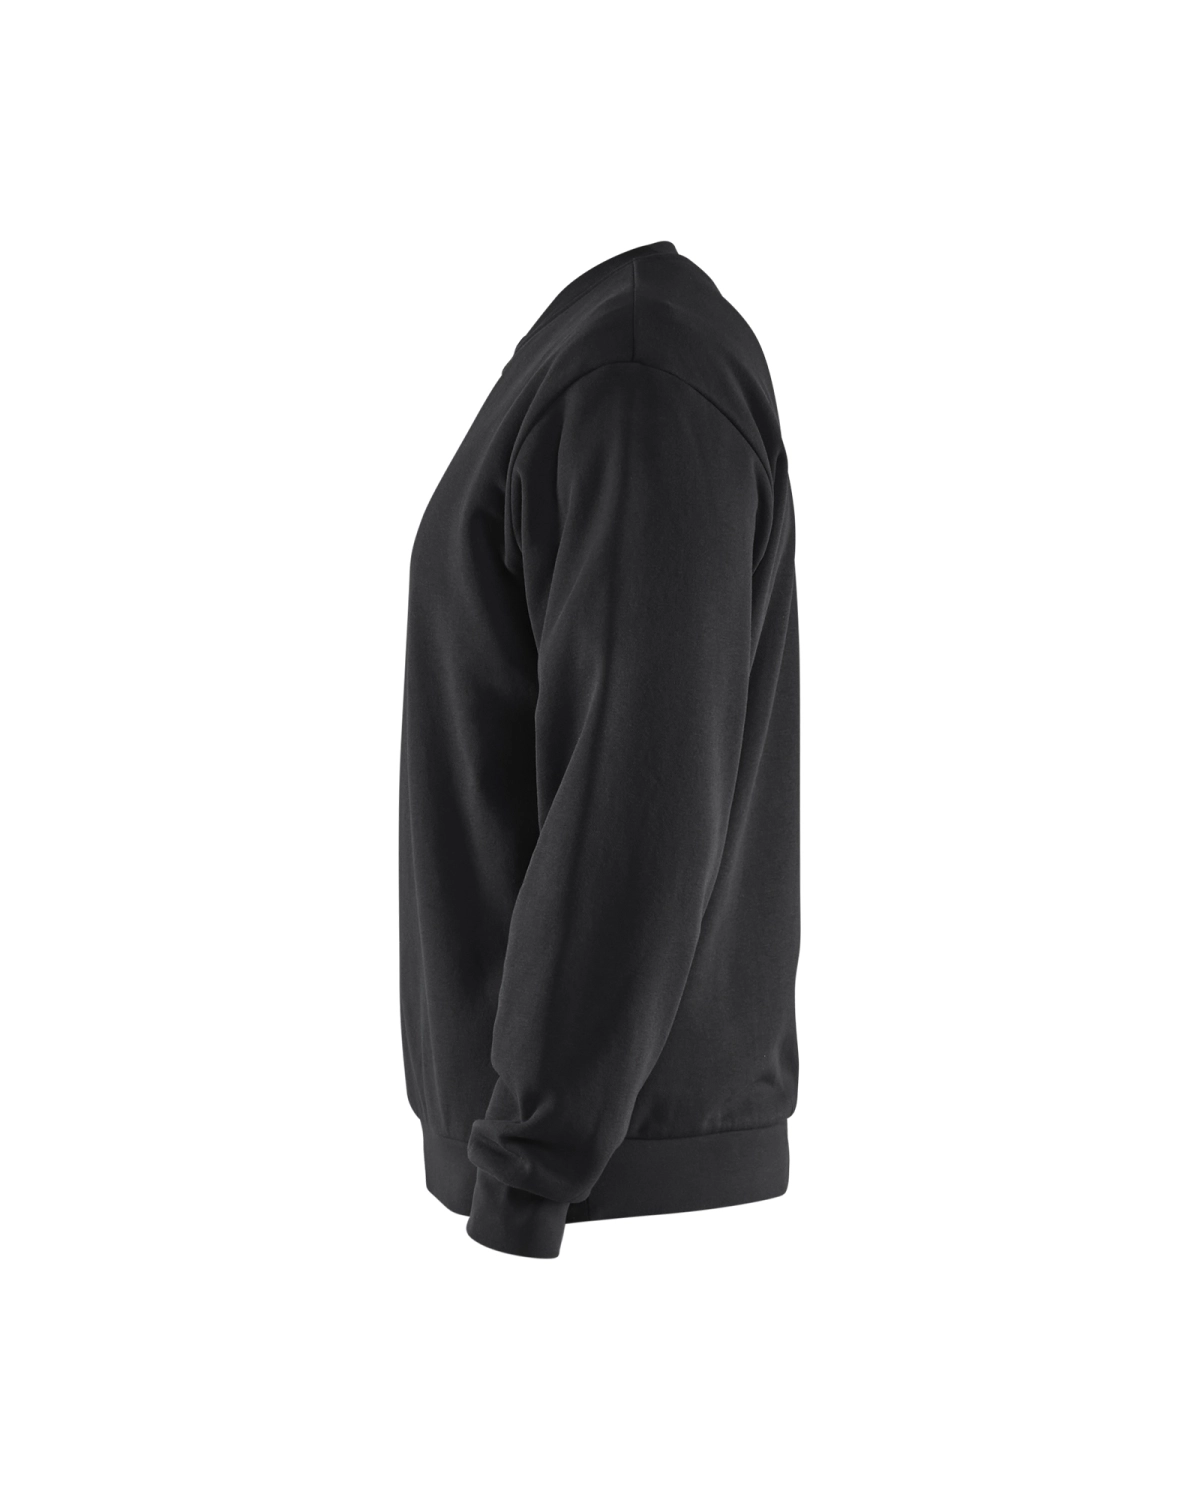 Blåkläder 3585 Sweatshirt - zwart - L-image